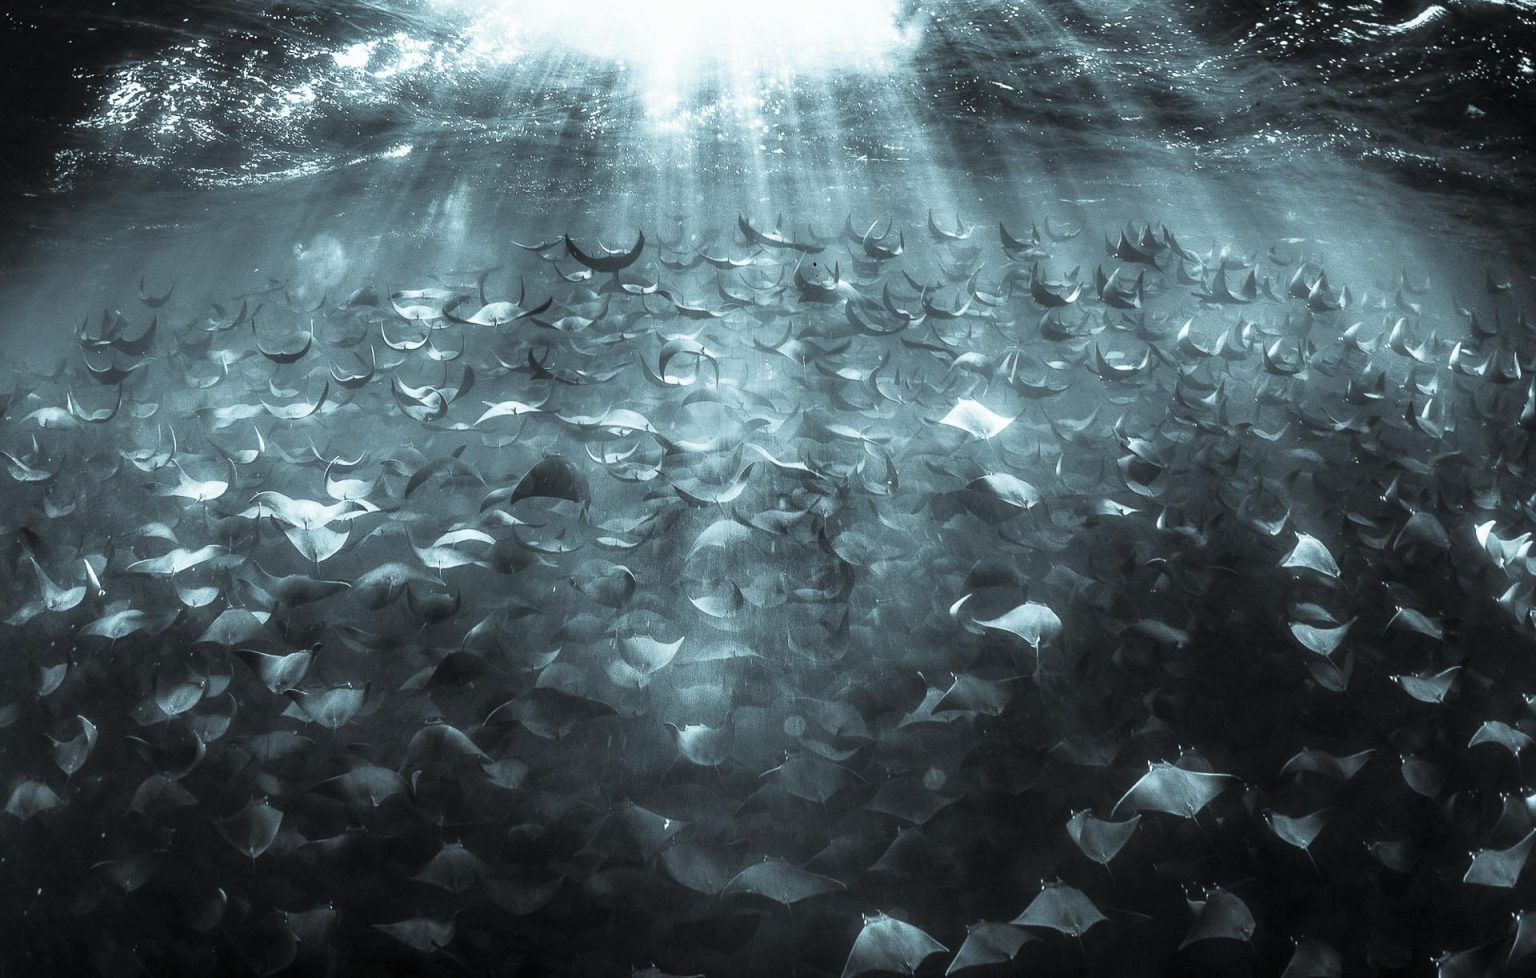 Поощрительная премия в категории Под водой, 2020. Мобулы в море Кортеса. Автор Исун Тепсаскул